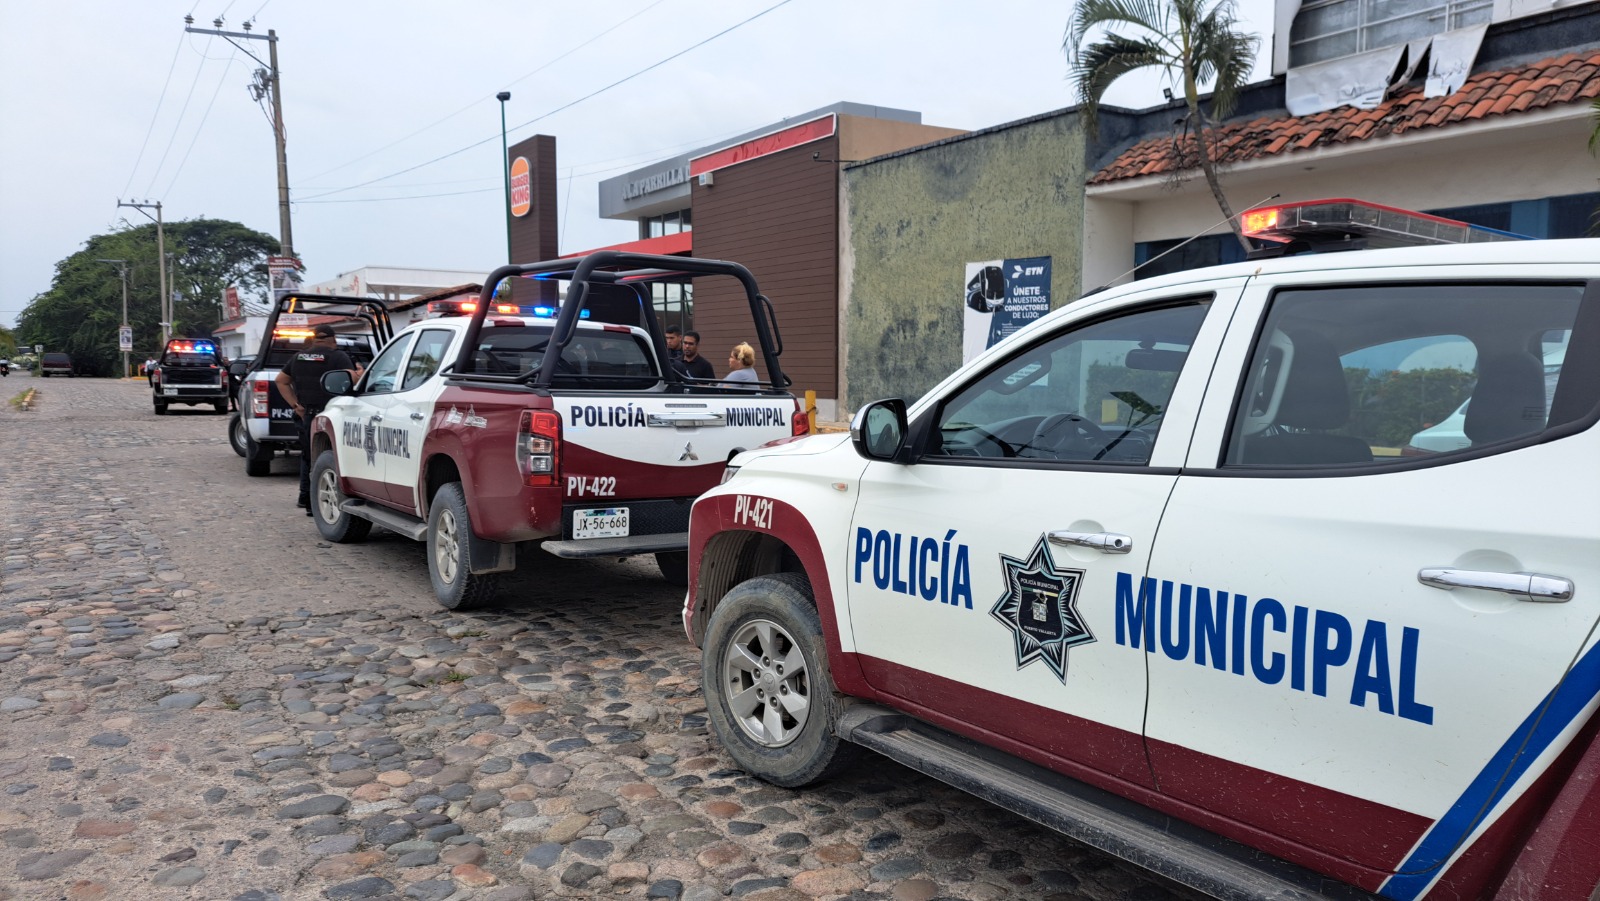 Unidades de la policía municipal en central de camiones